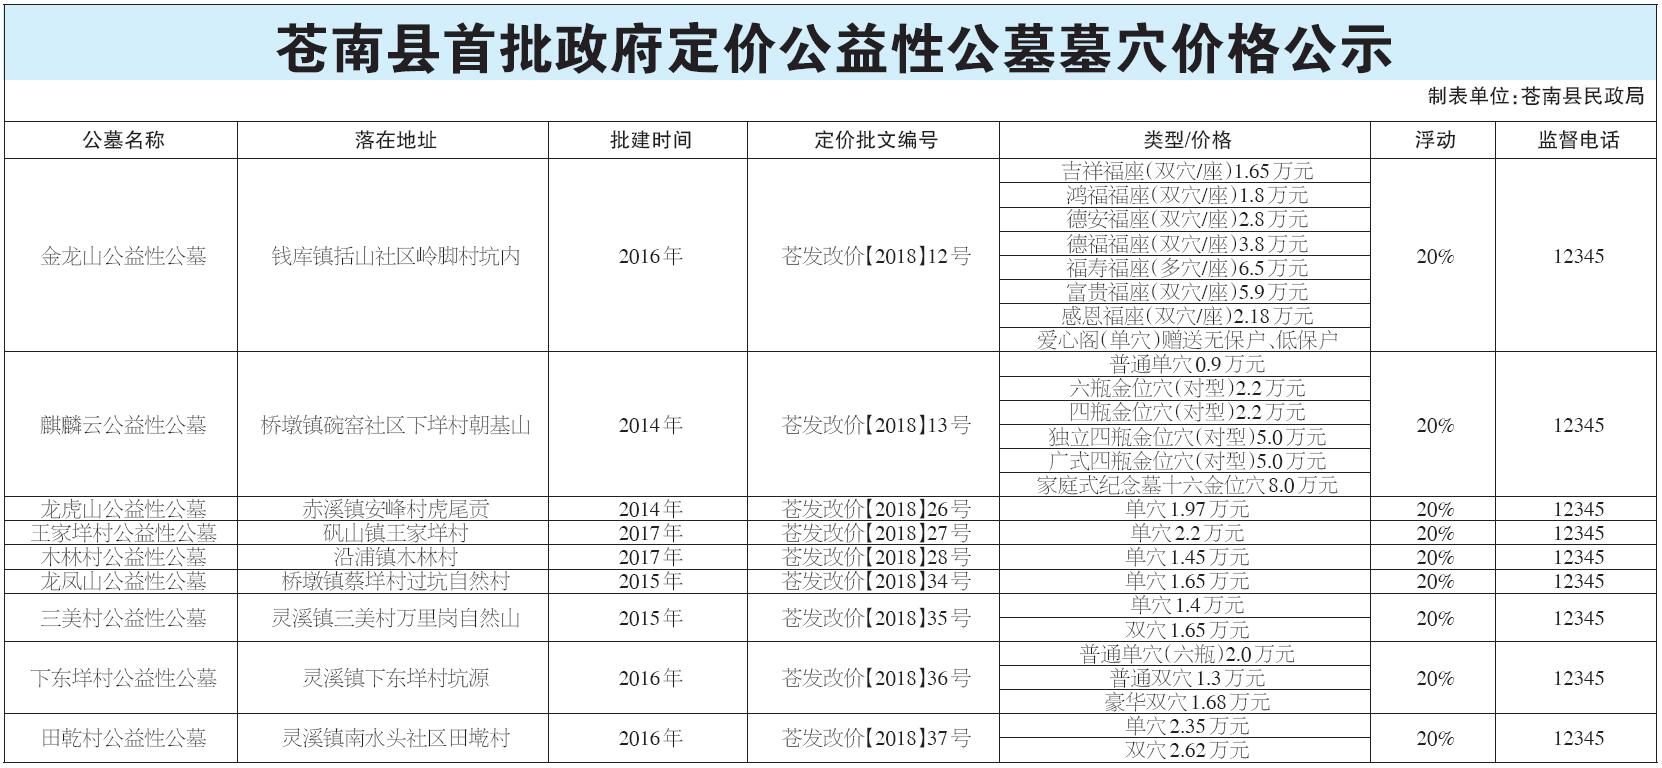 苍南县首批政府定价公益性公墓墓穴价格公示